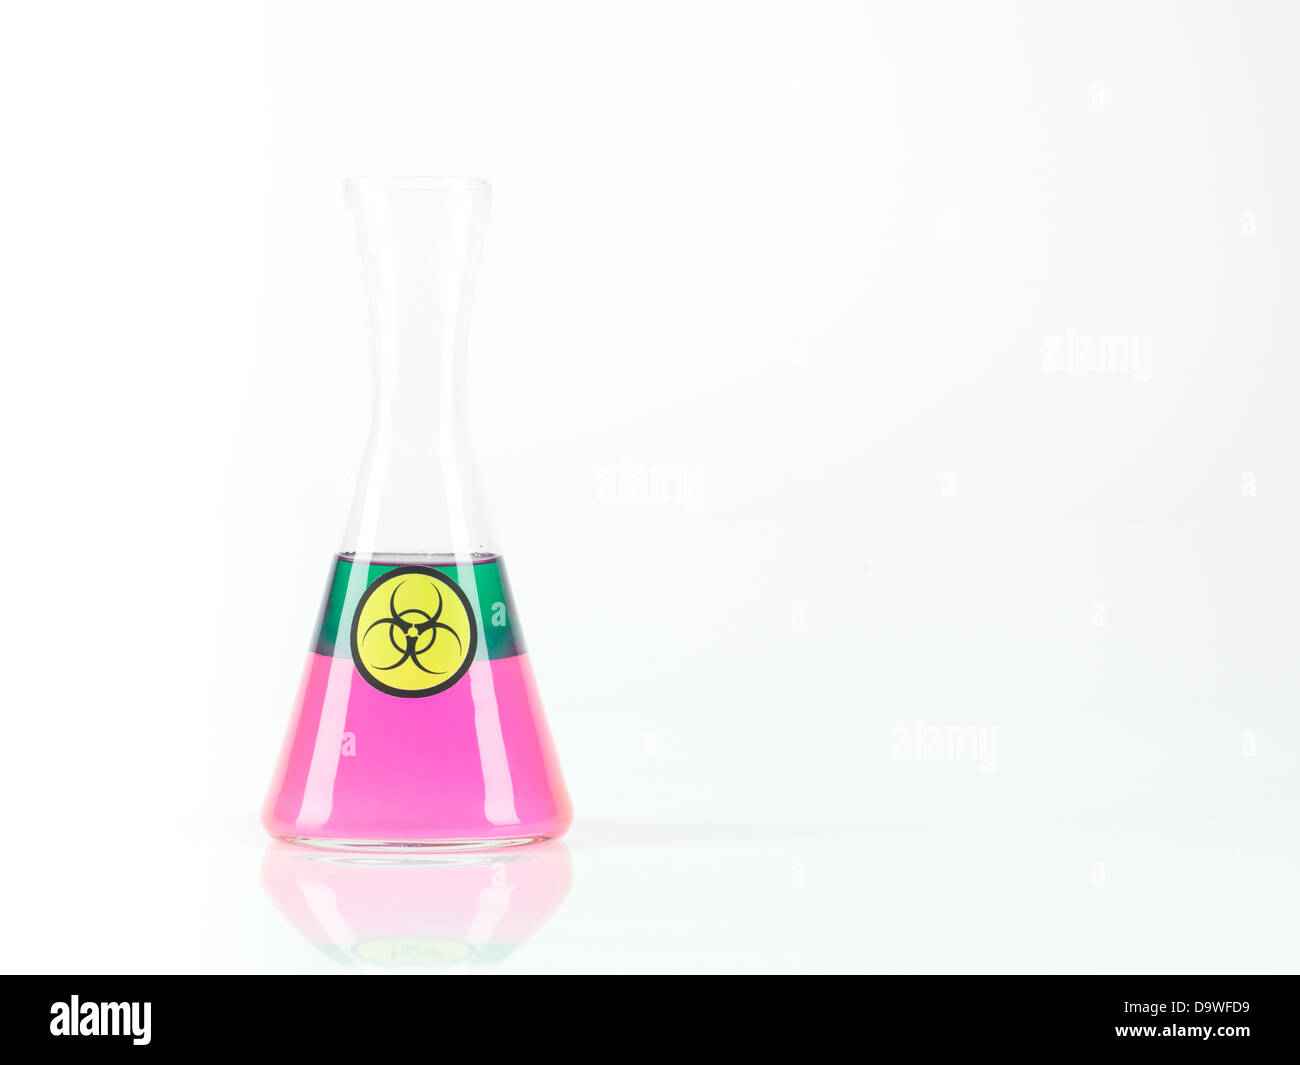 Frontalansicht eines Erlenmeyer-Cup mit 2 getrennten Flüssigkeiten, eine grüne, eine rosafarbene schwebenden beschriftet als verfügen, mit einem weißen Hintergrund Stockfoto